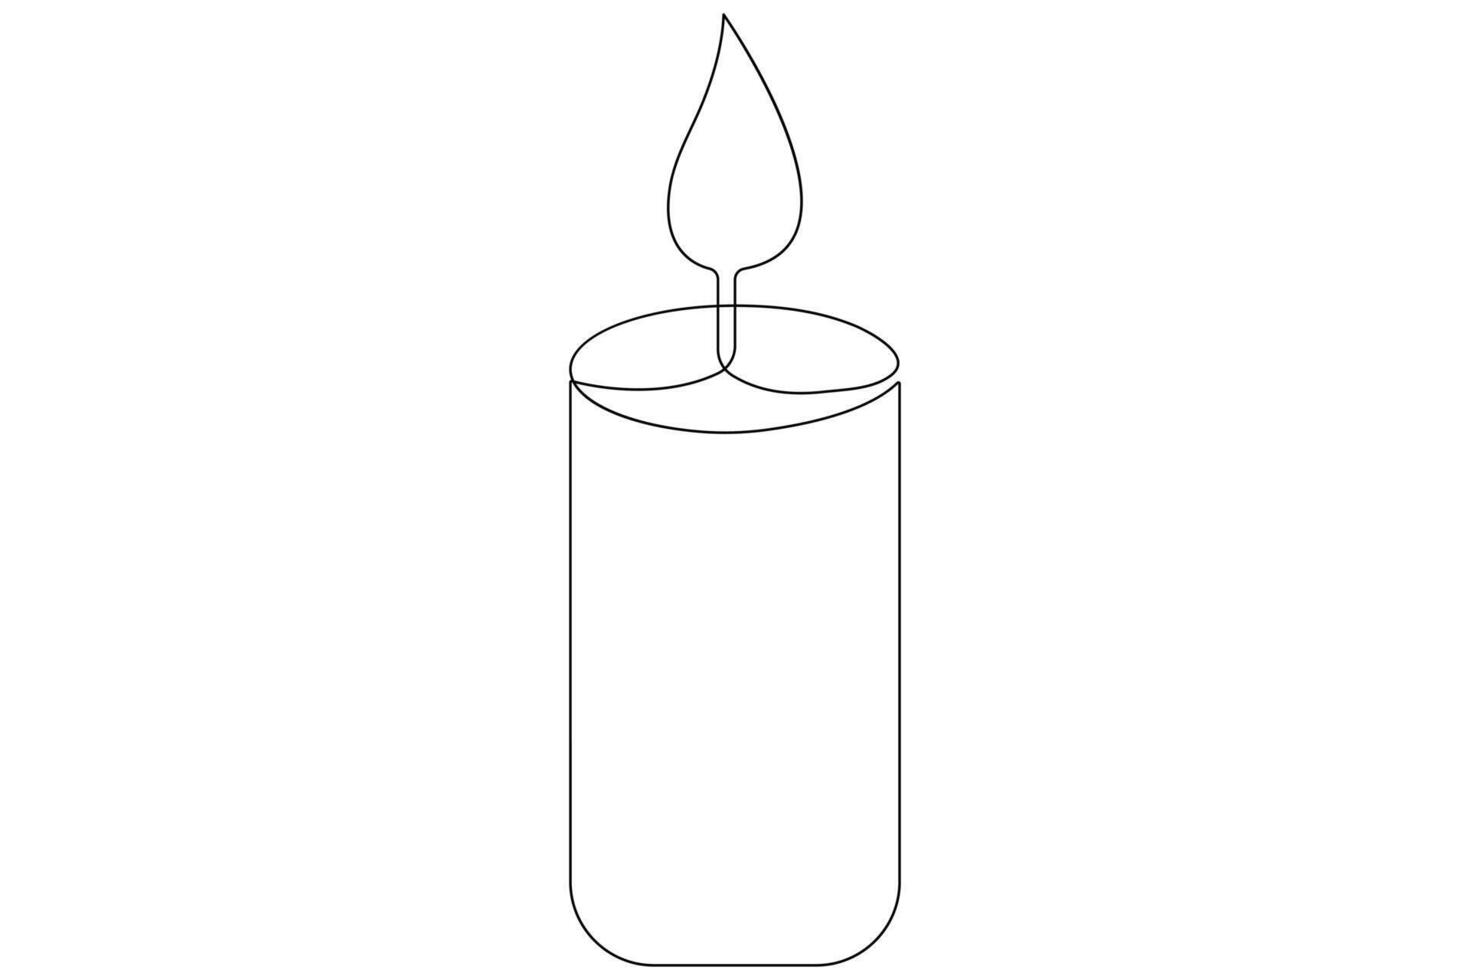 continuo singolo linea arte disegno di candela leggero simbolo e schema vettore illustrazione